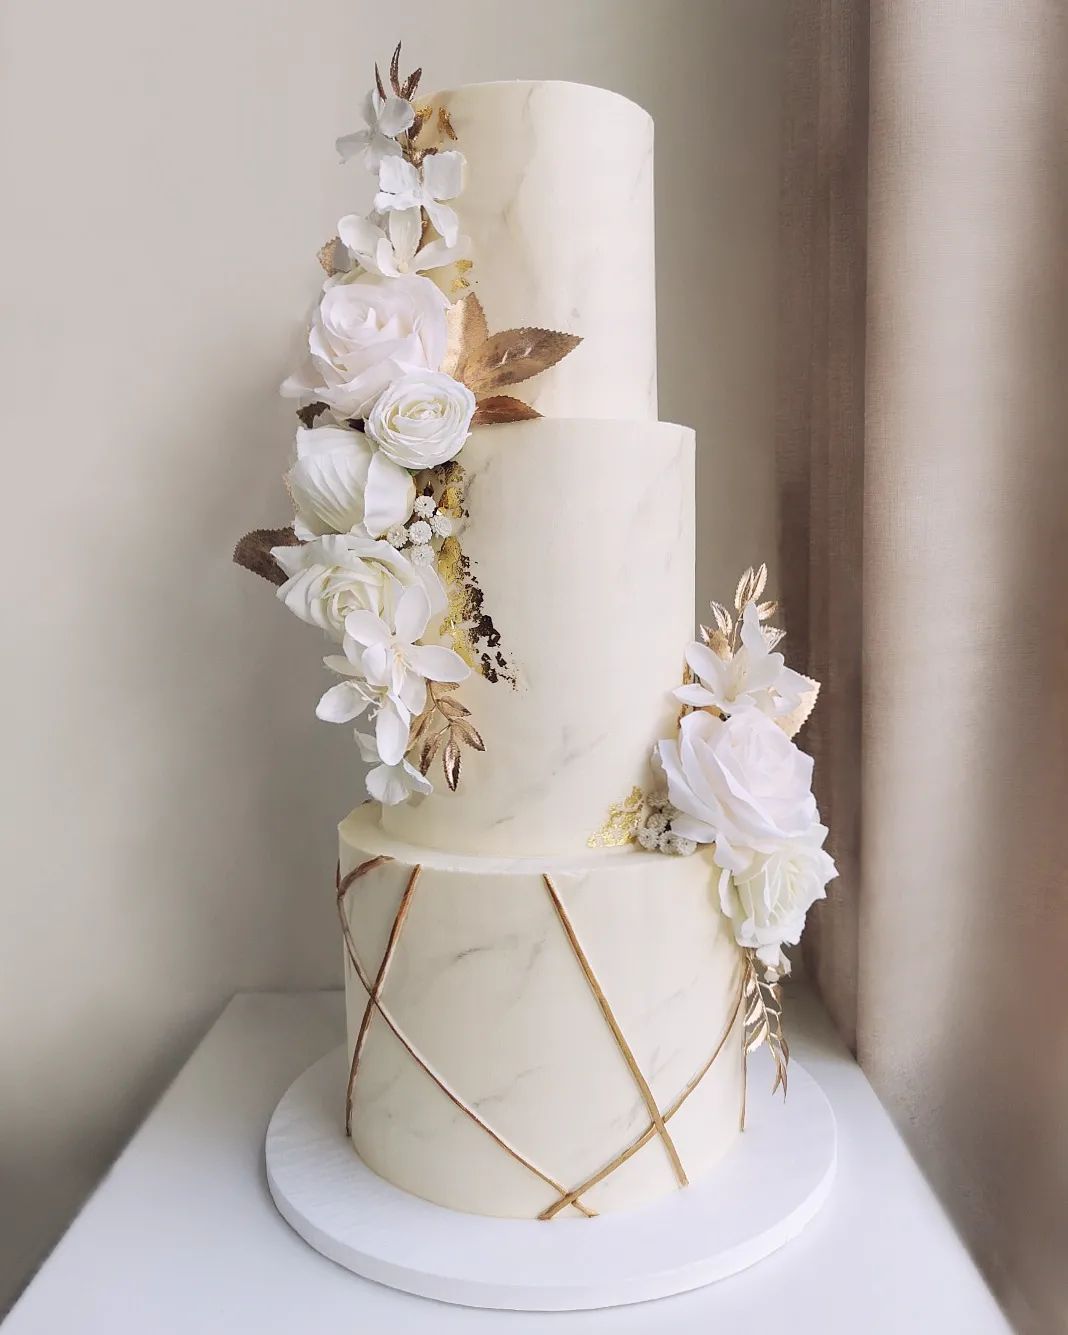 3 tier white and gold geo wedding cake via littlemissfattycakes